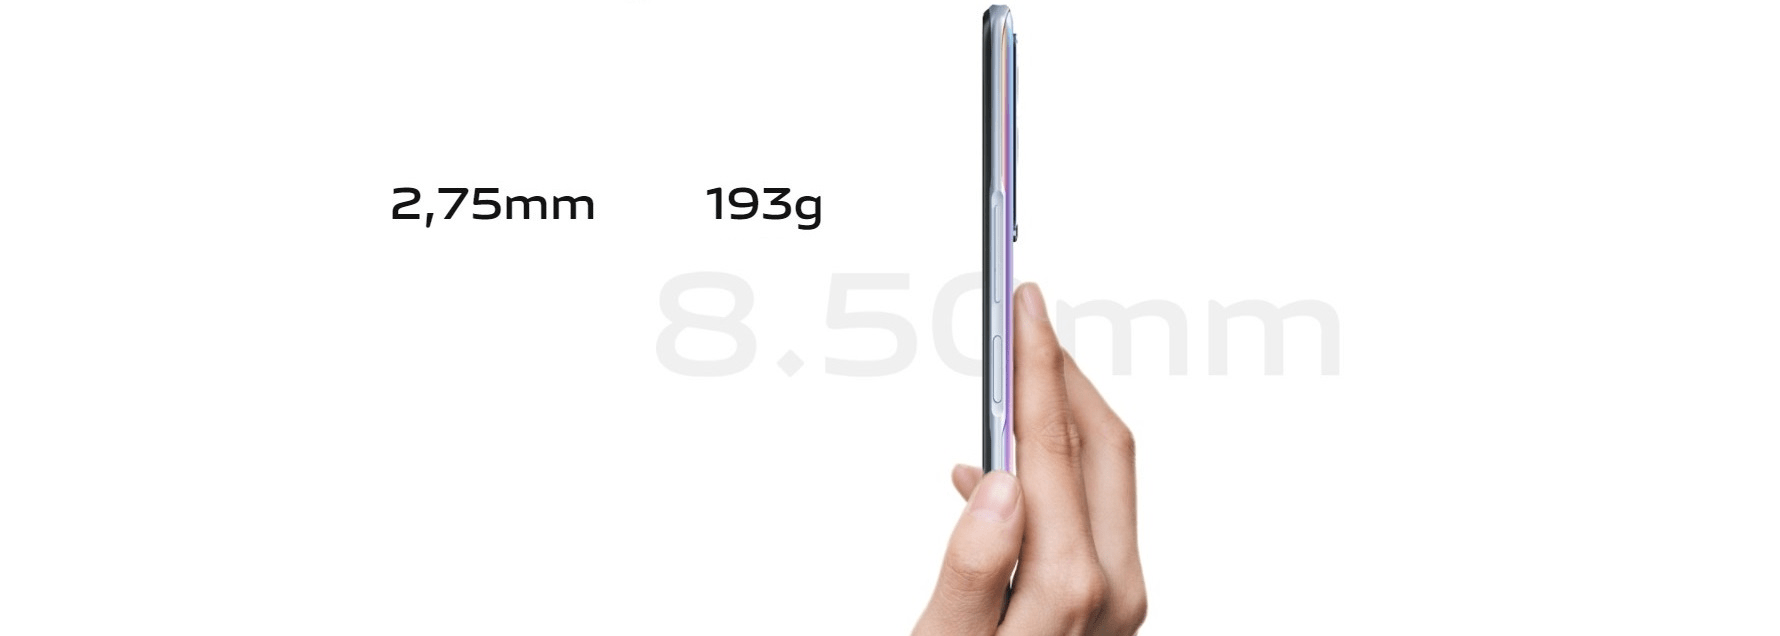 VIVO Y52 5G, 4GB/128GB, černá výkonný chytrý telefon moderní mobilní dotykový telefon smartphone IPS LCD displej Bluetooth technologie wifi dual sim micro sd karta ip52 odolnost čtečka otisků prstů v displeji rychlonabíjení flashcharge 18W 5G připojení podpora 5G síť mobilní inteligentní 64mpx fotoaparát přední 16mpx fotoaparát natáčení videa v 4k rozlišení NFC Android 11 výkonná baterie MediaTek Dimensity 700 5G